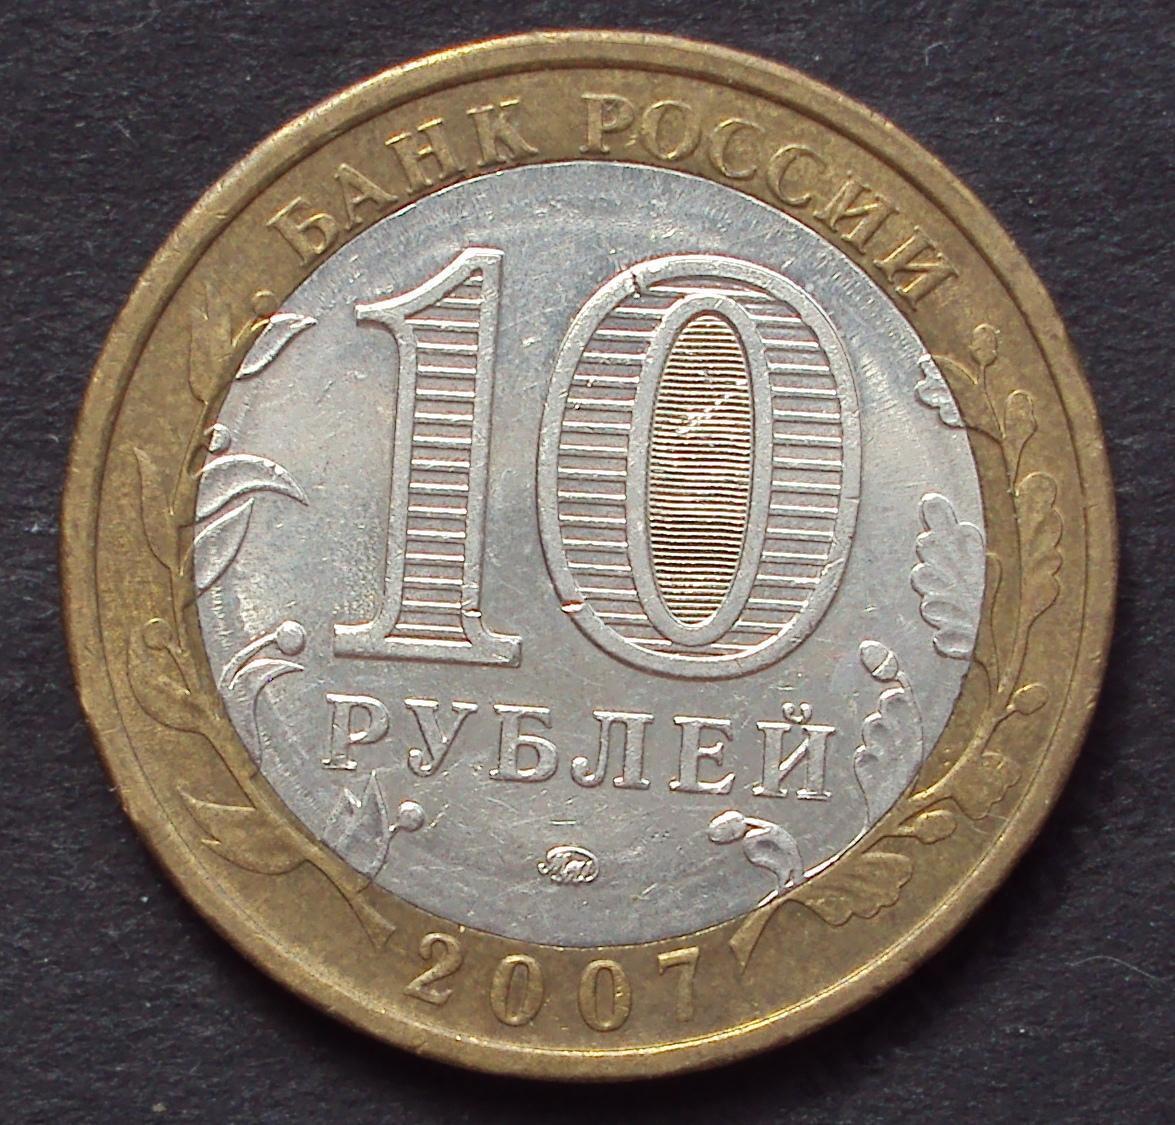 10 рублей 2007 год! Липецкая область. ММД. (А-32).